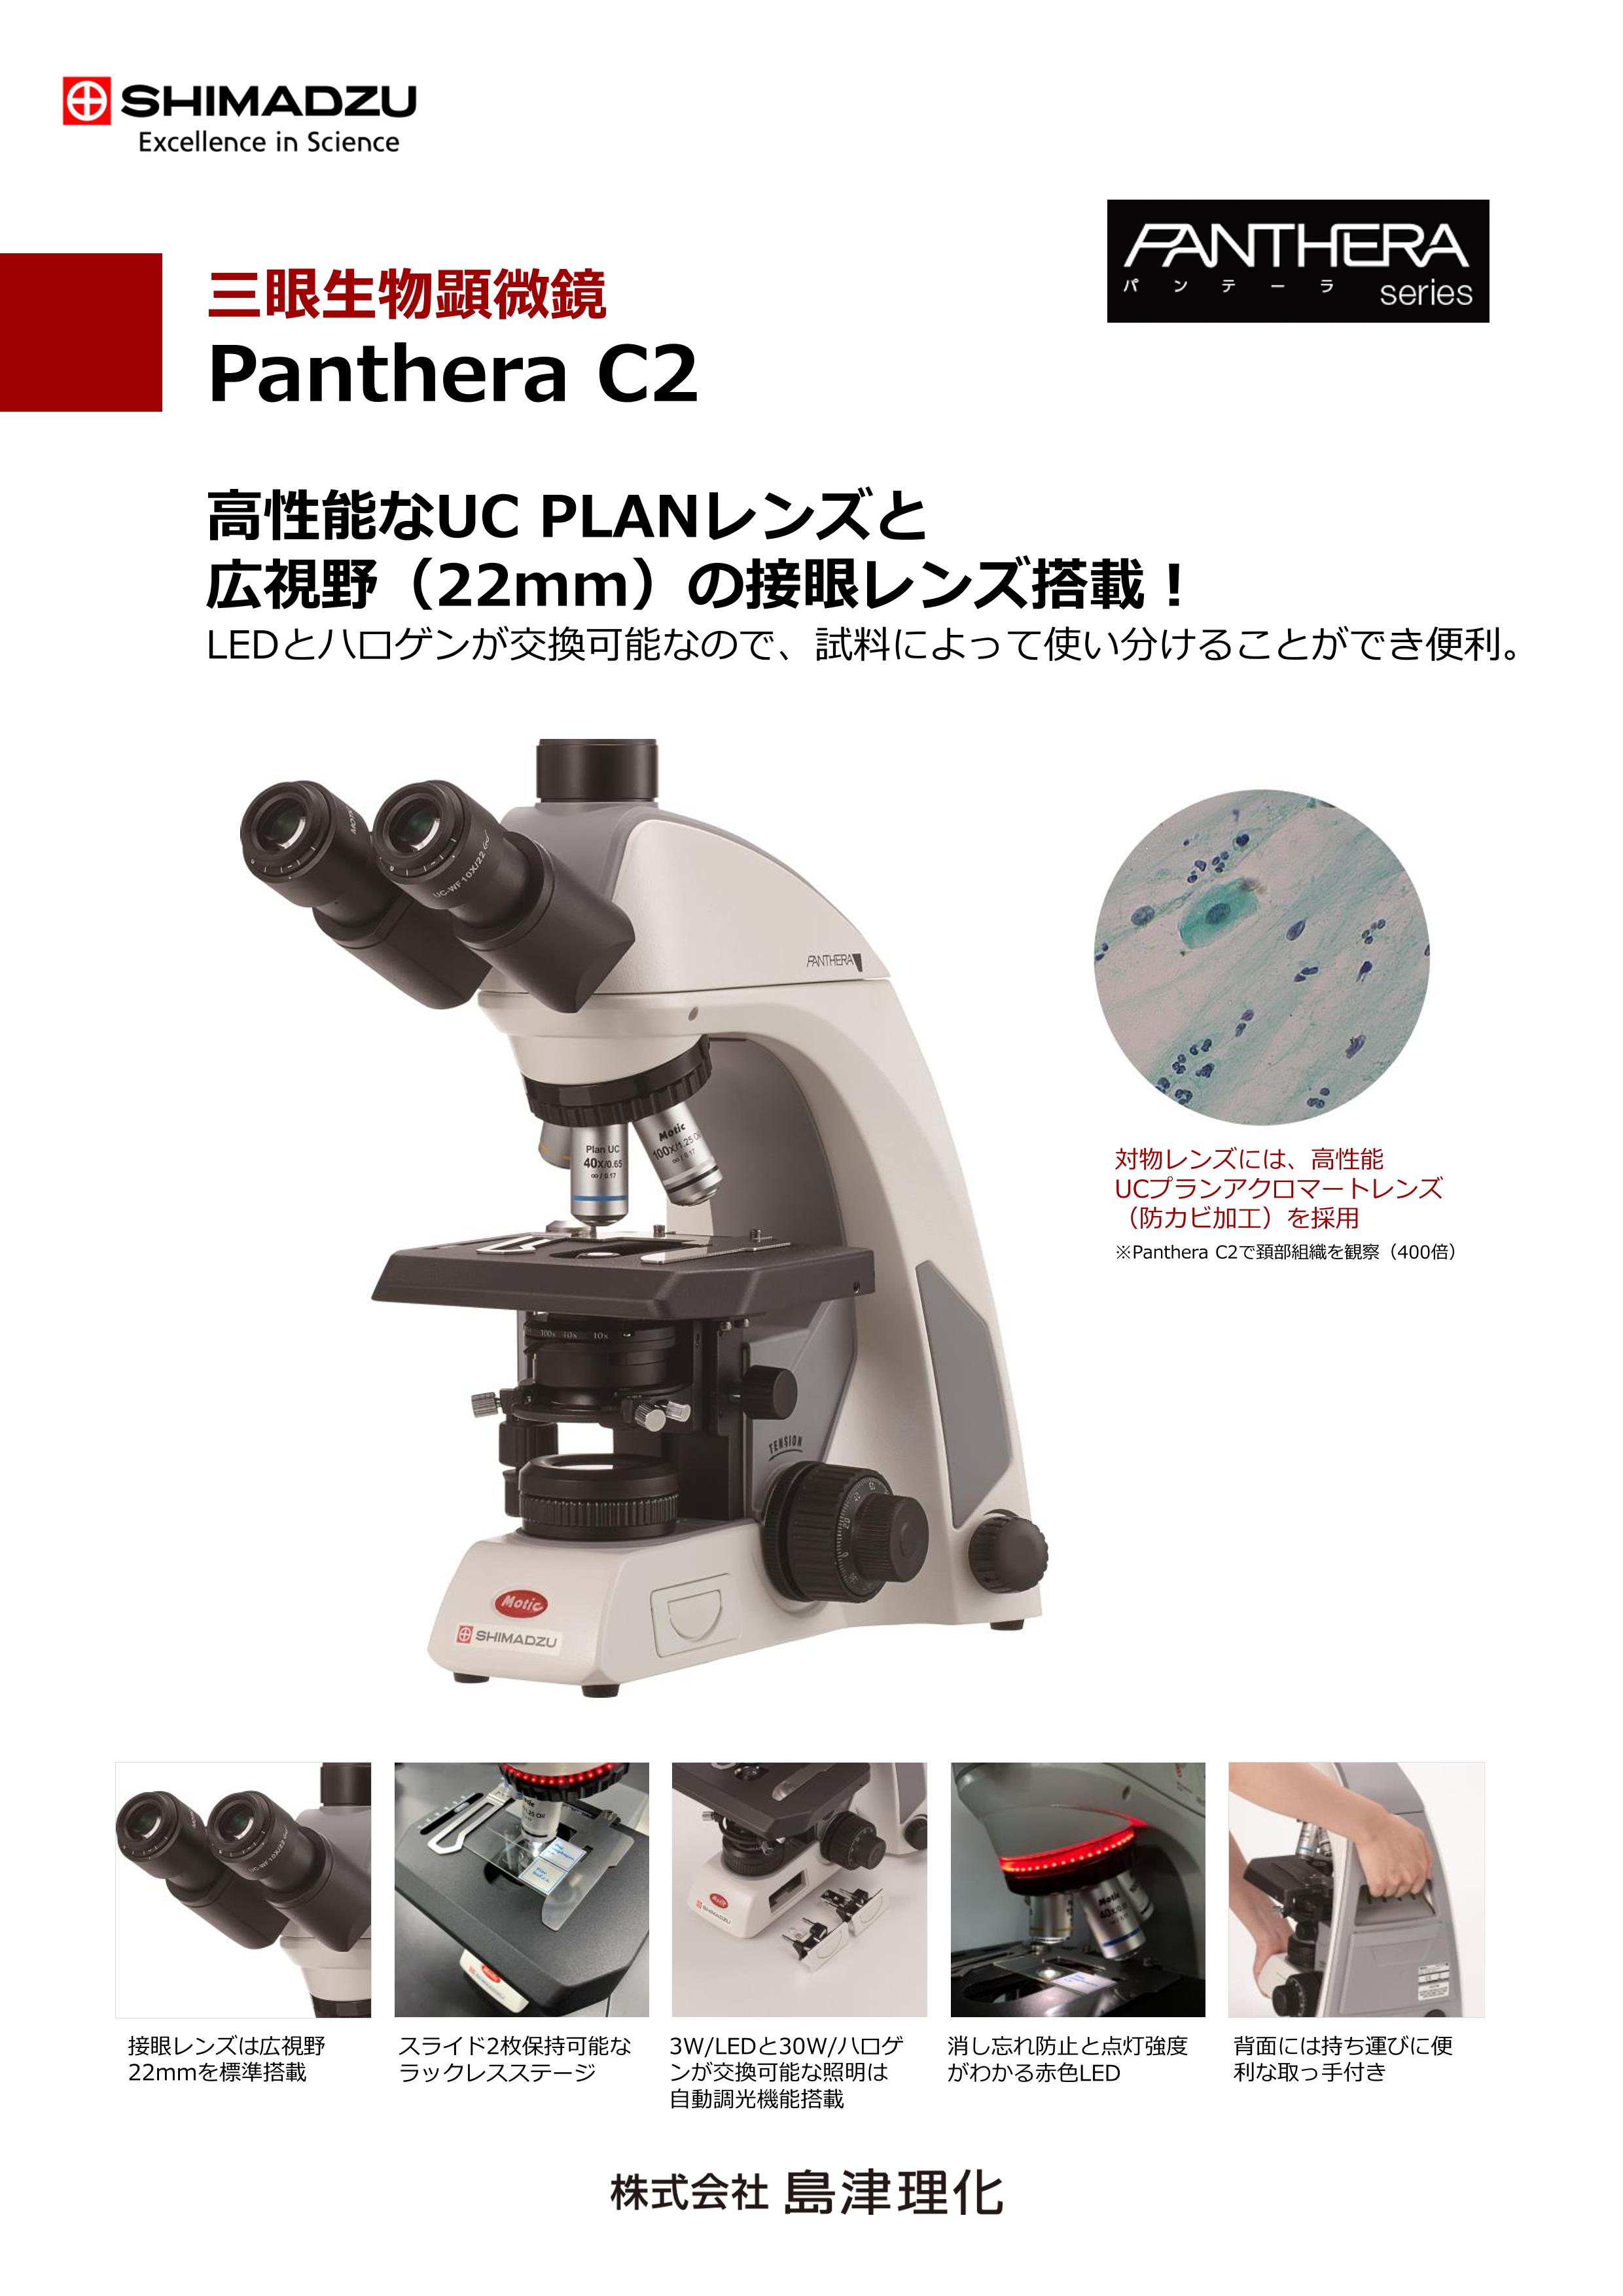 アズワン プラノレンズ生物顕微鏡 インフィニティ 三眼 SL-700T - 1